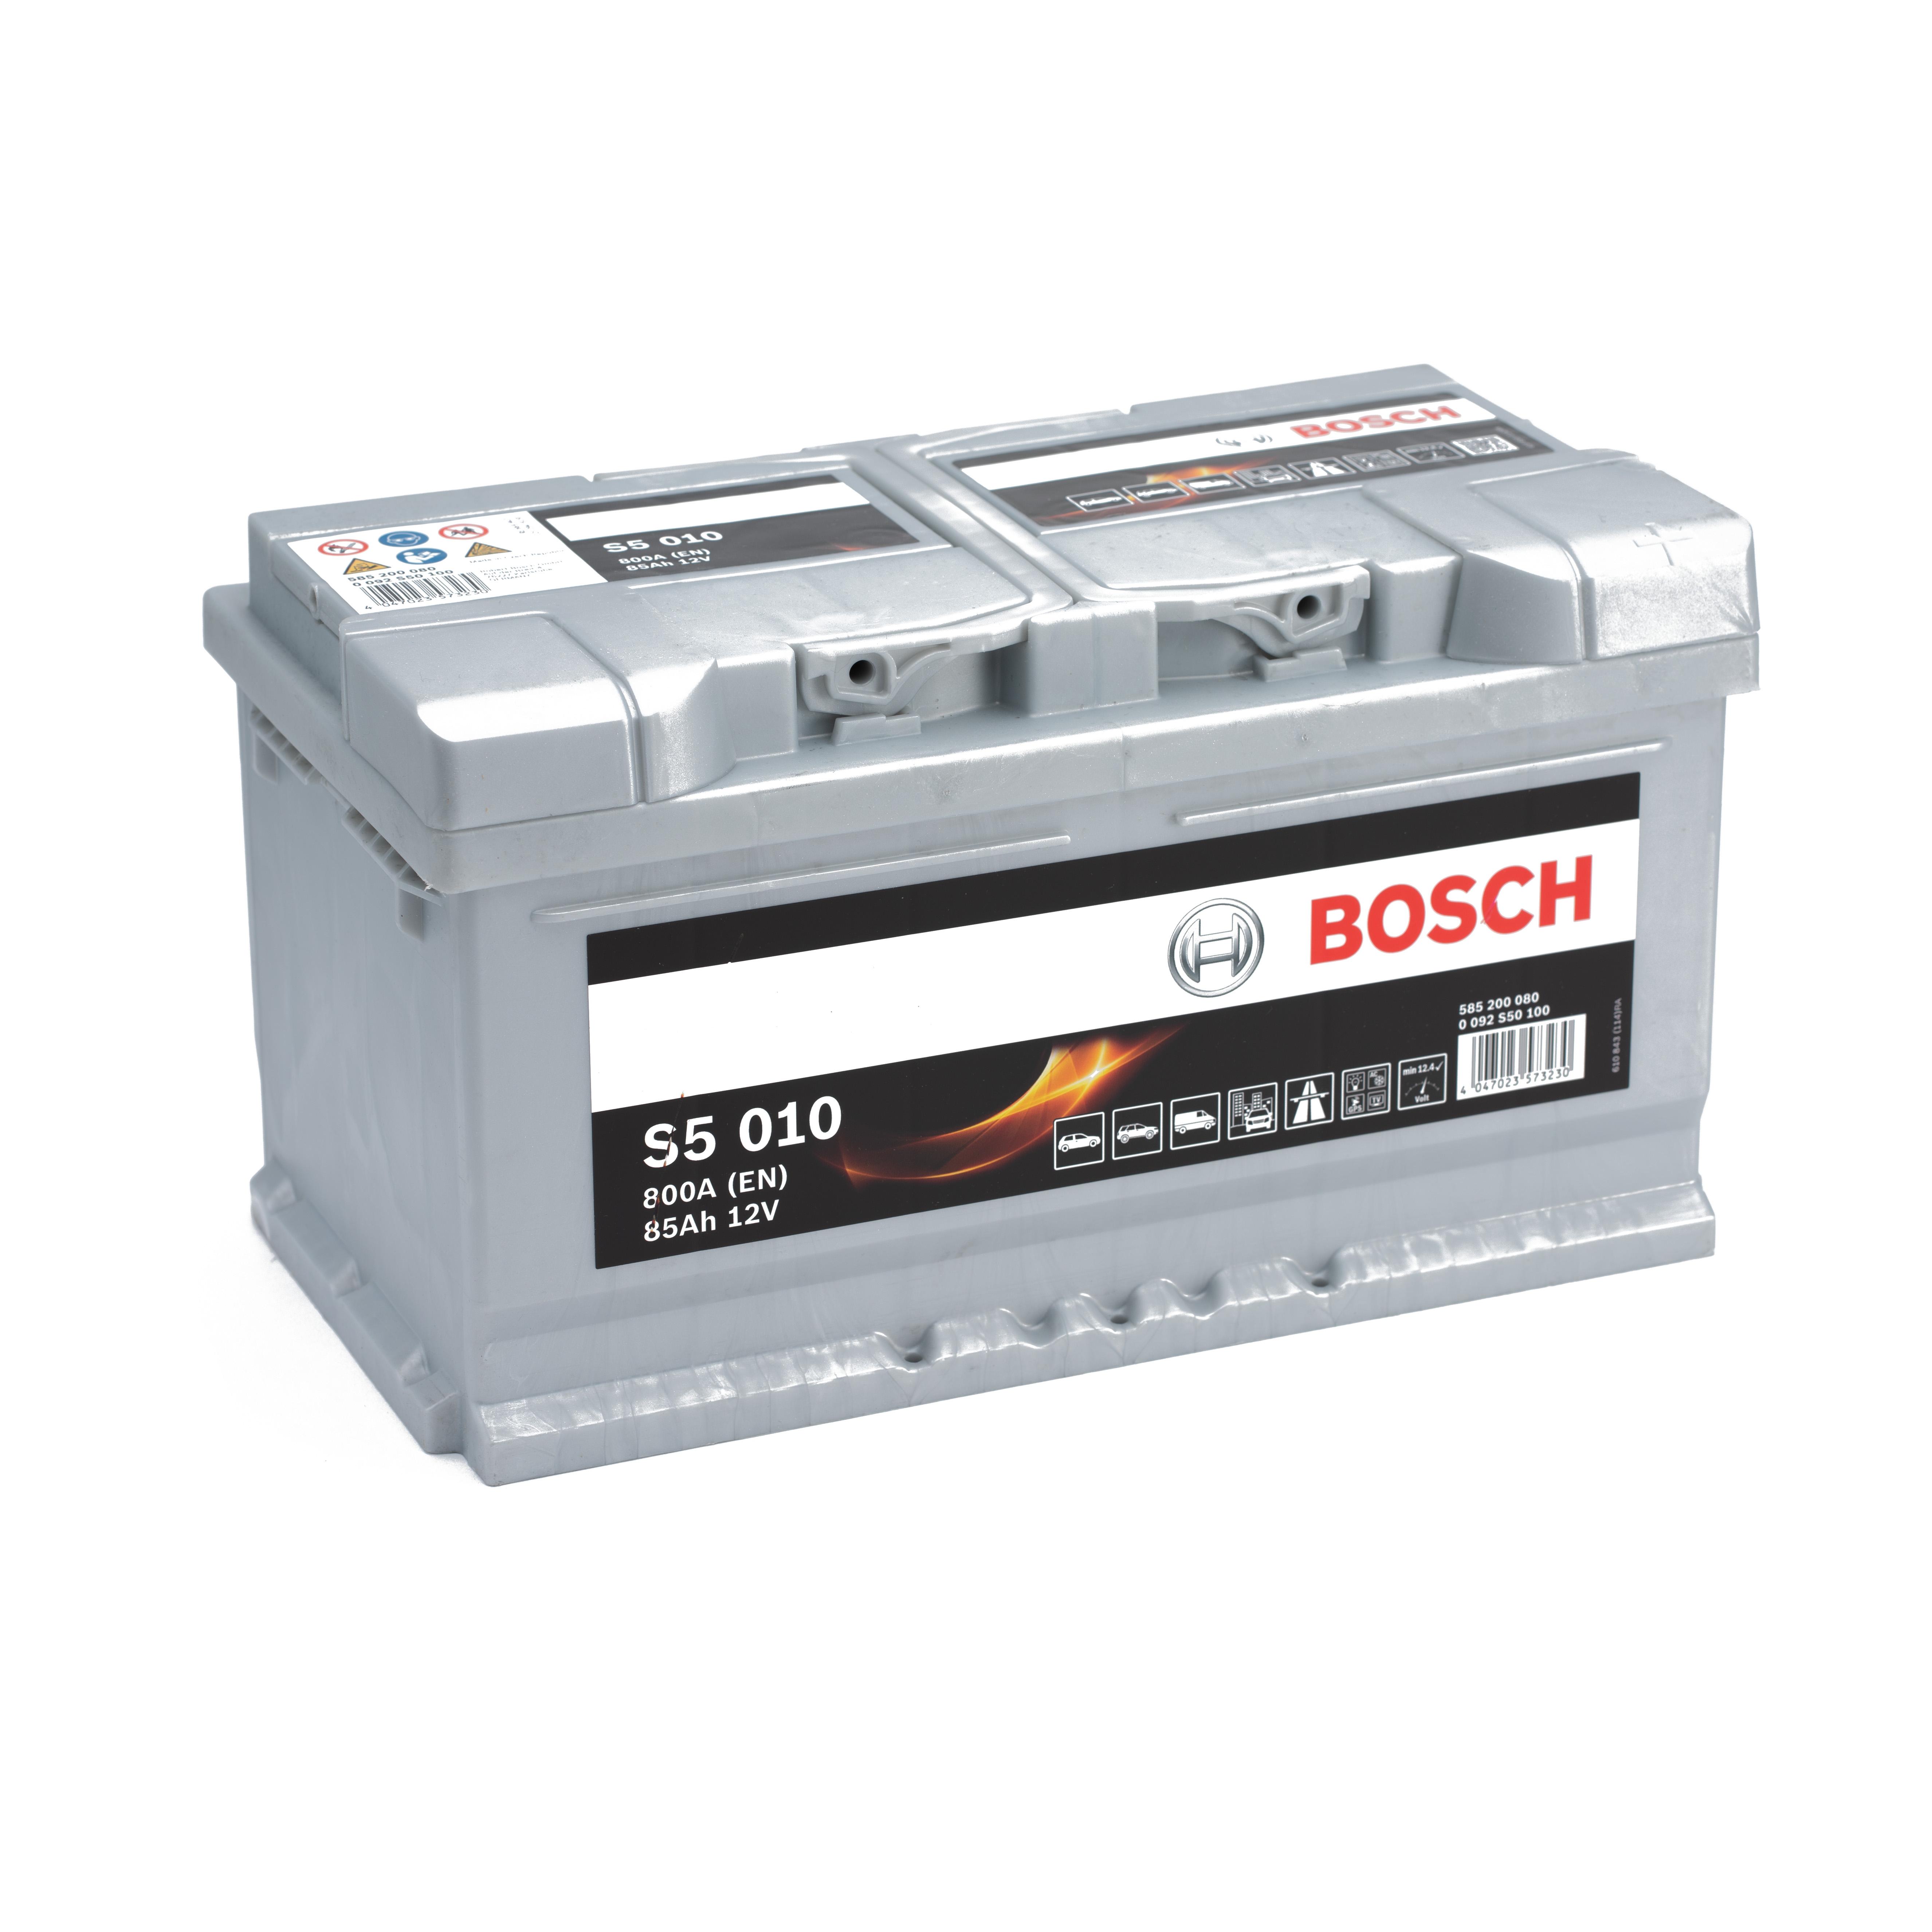 https://swissbatt24.ch/media/image/1a/2d/bd/Bosch-S5-010-85Ah-Autobatterie-585200080.jpg